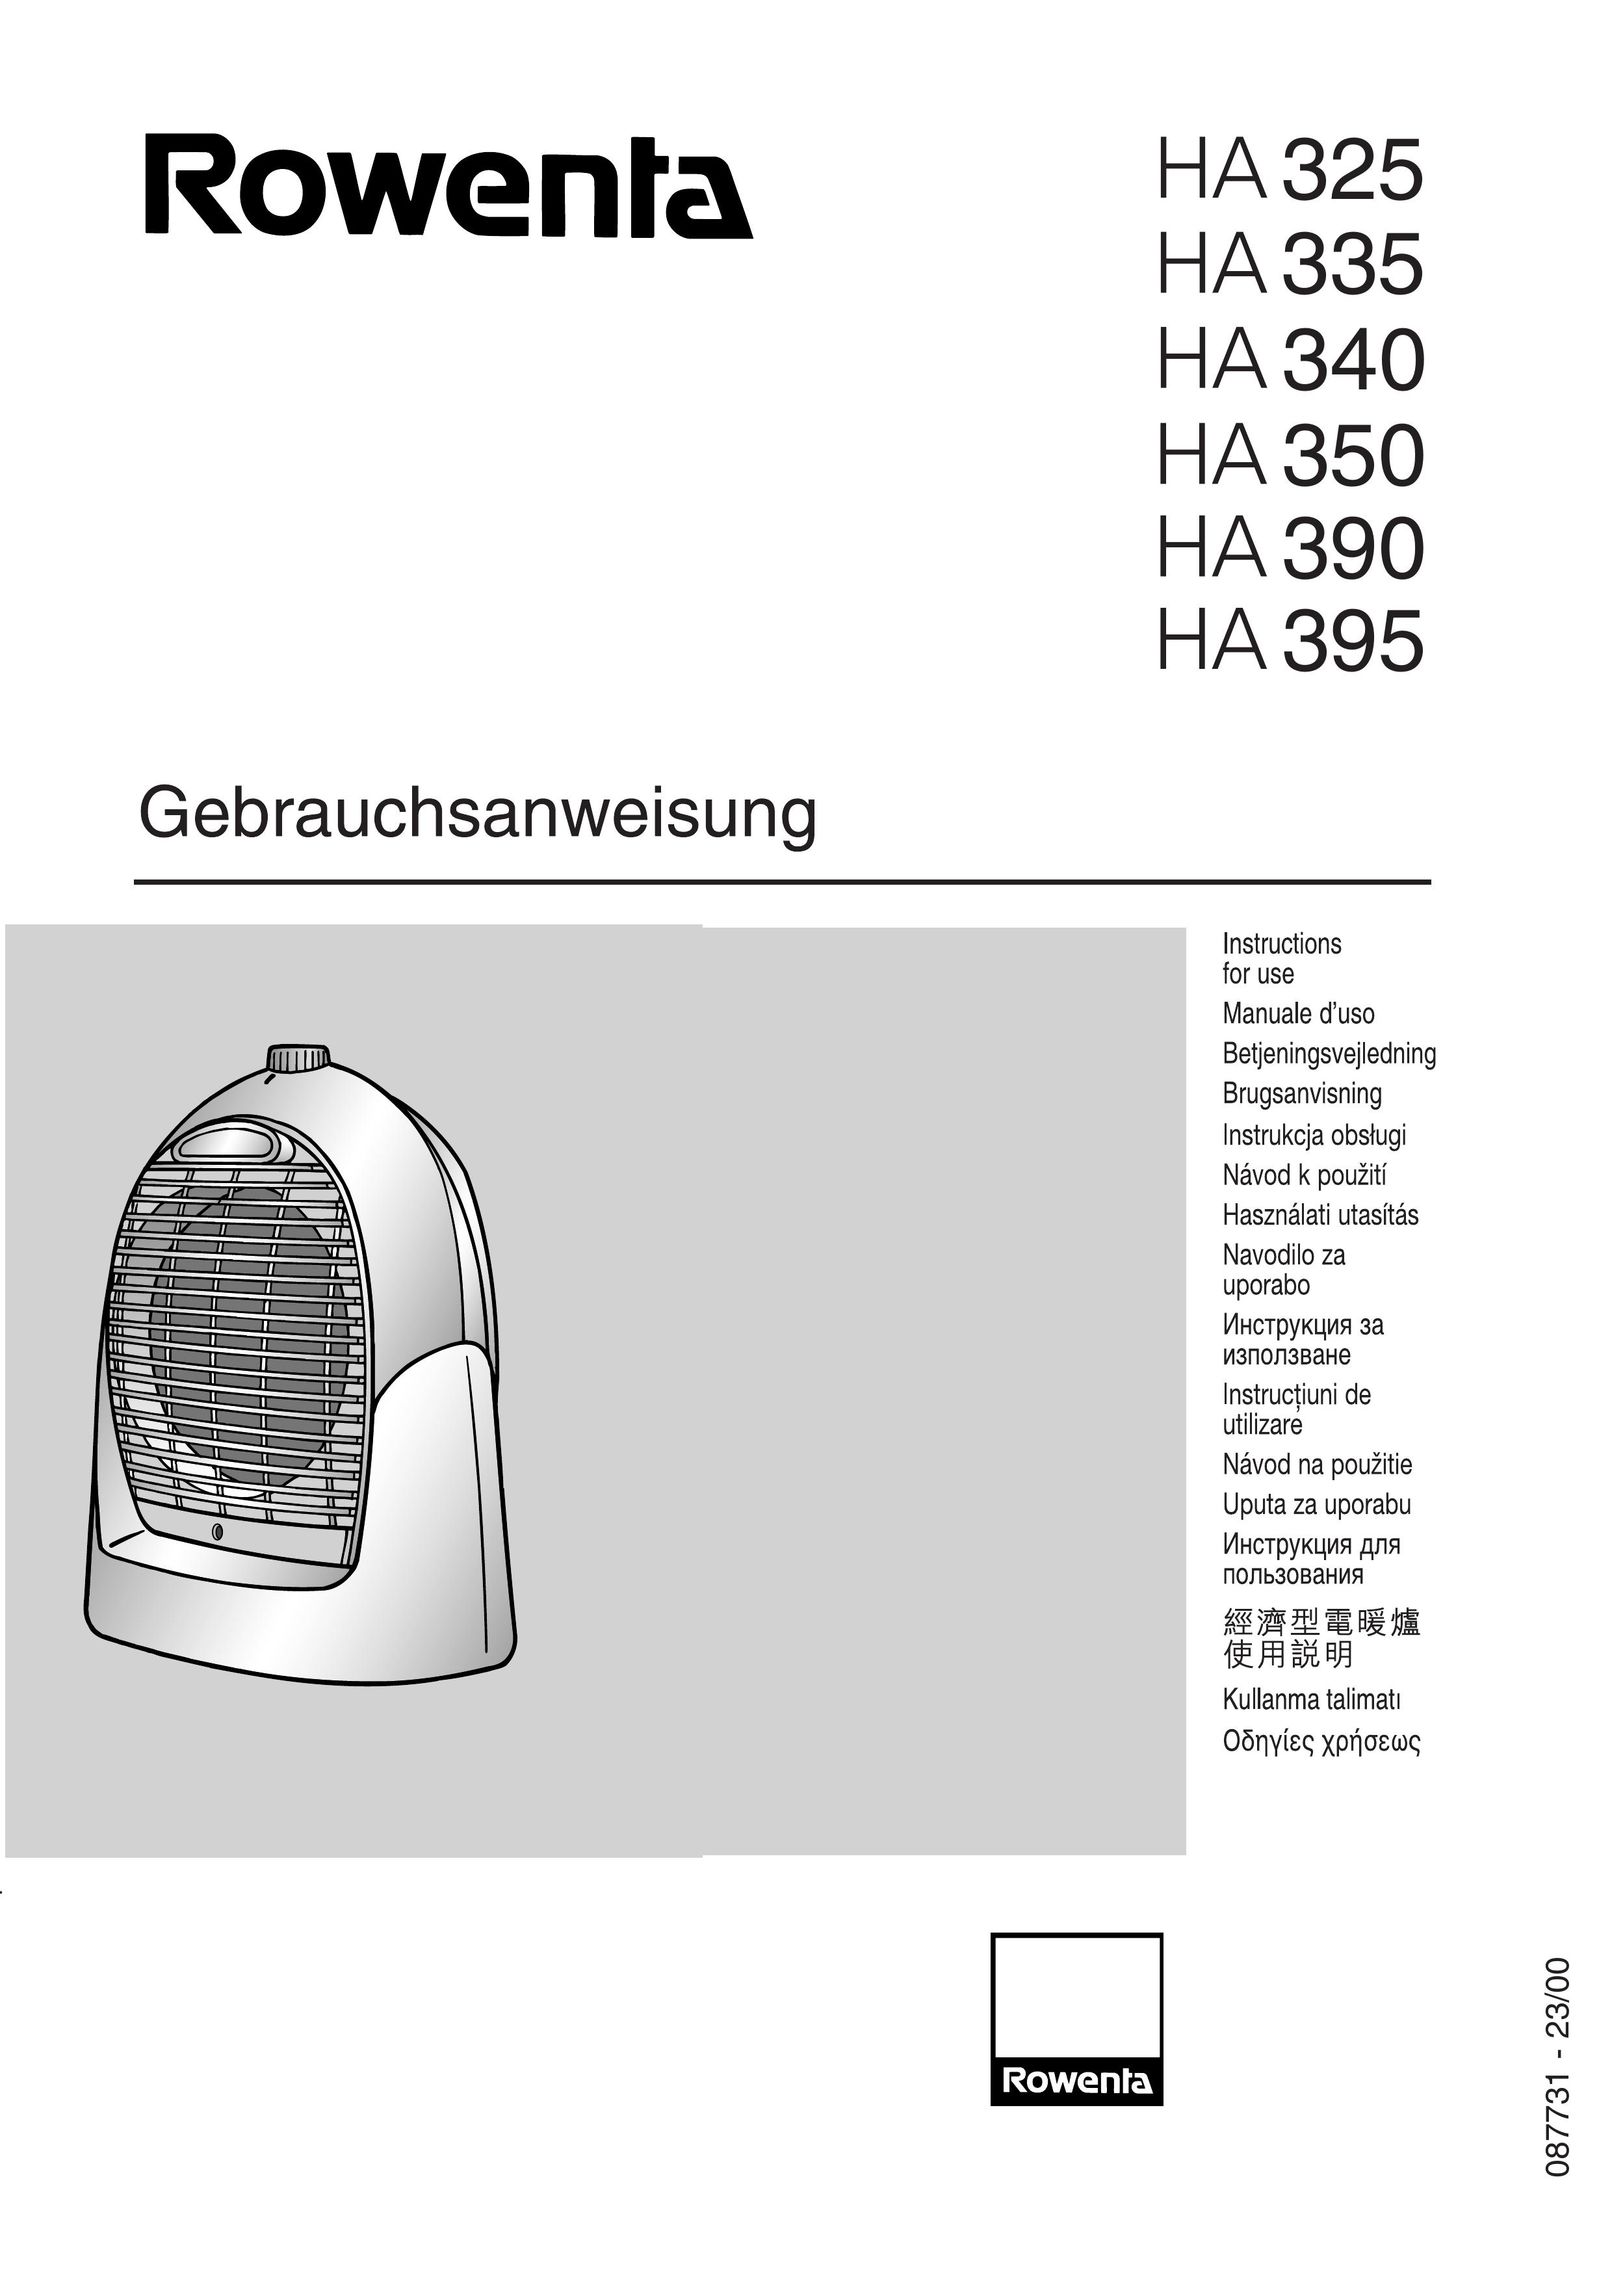 Rowenta HA 335 Fan User Manual